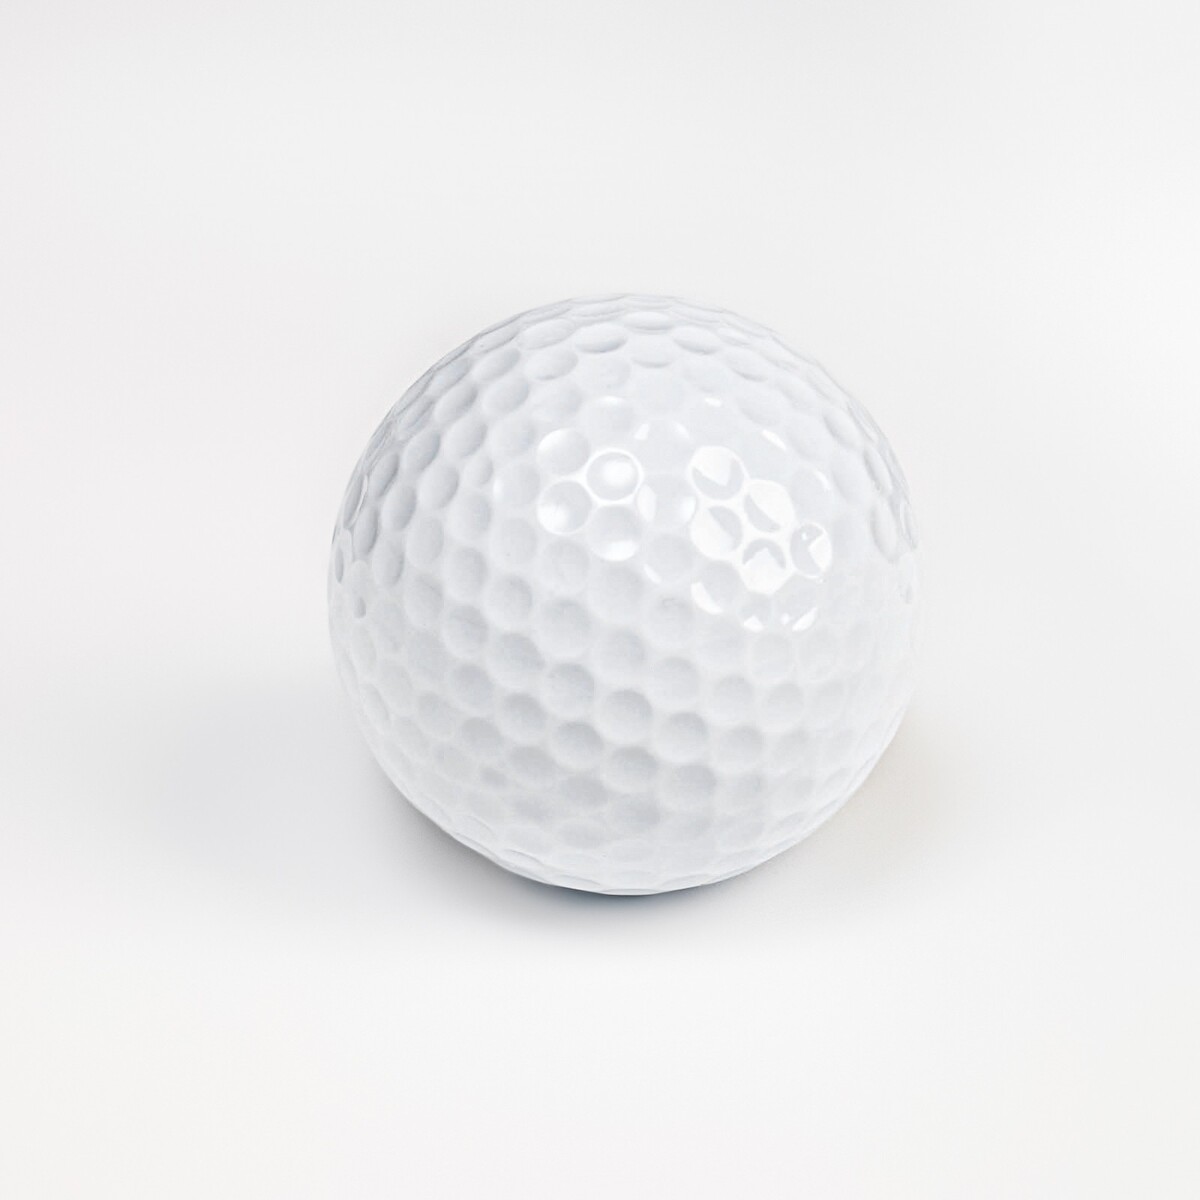 Мяч для гольфа, двухслойный, 420 выемок, d=4.3 см, 45 г мяч для гольфа bridgestone e12 contact white bgb1cwx белый 3шт